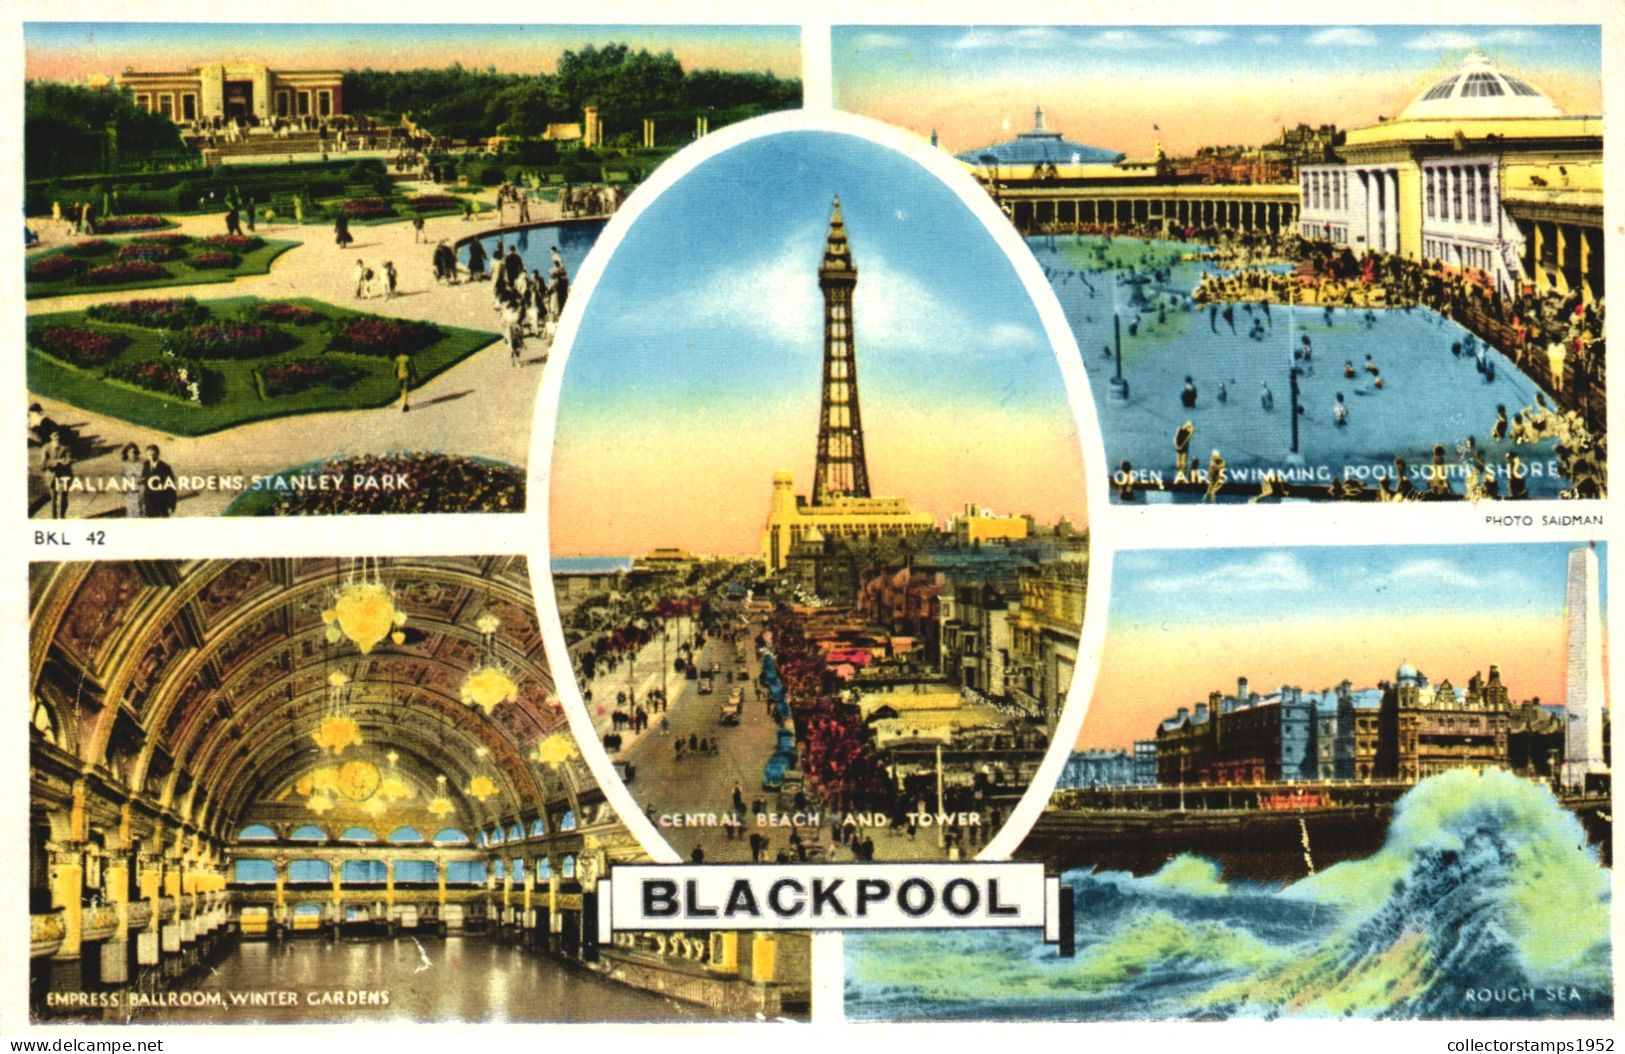 BLACKPOOL, LANCASHIRE, MULTIPLE VIEWS, ARCHITECTURE, TOWER, PARK, POOL, ENGLAND, UNITED KINGDOM, POSTCARD - Blackpool